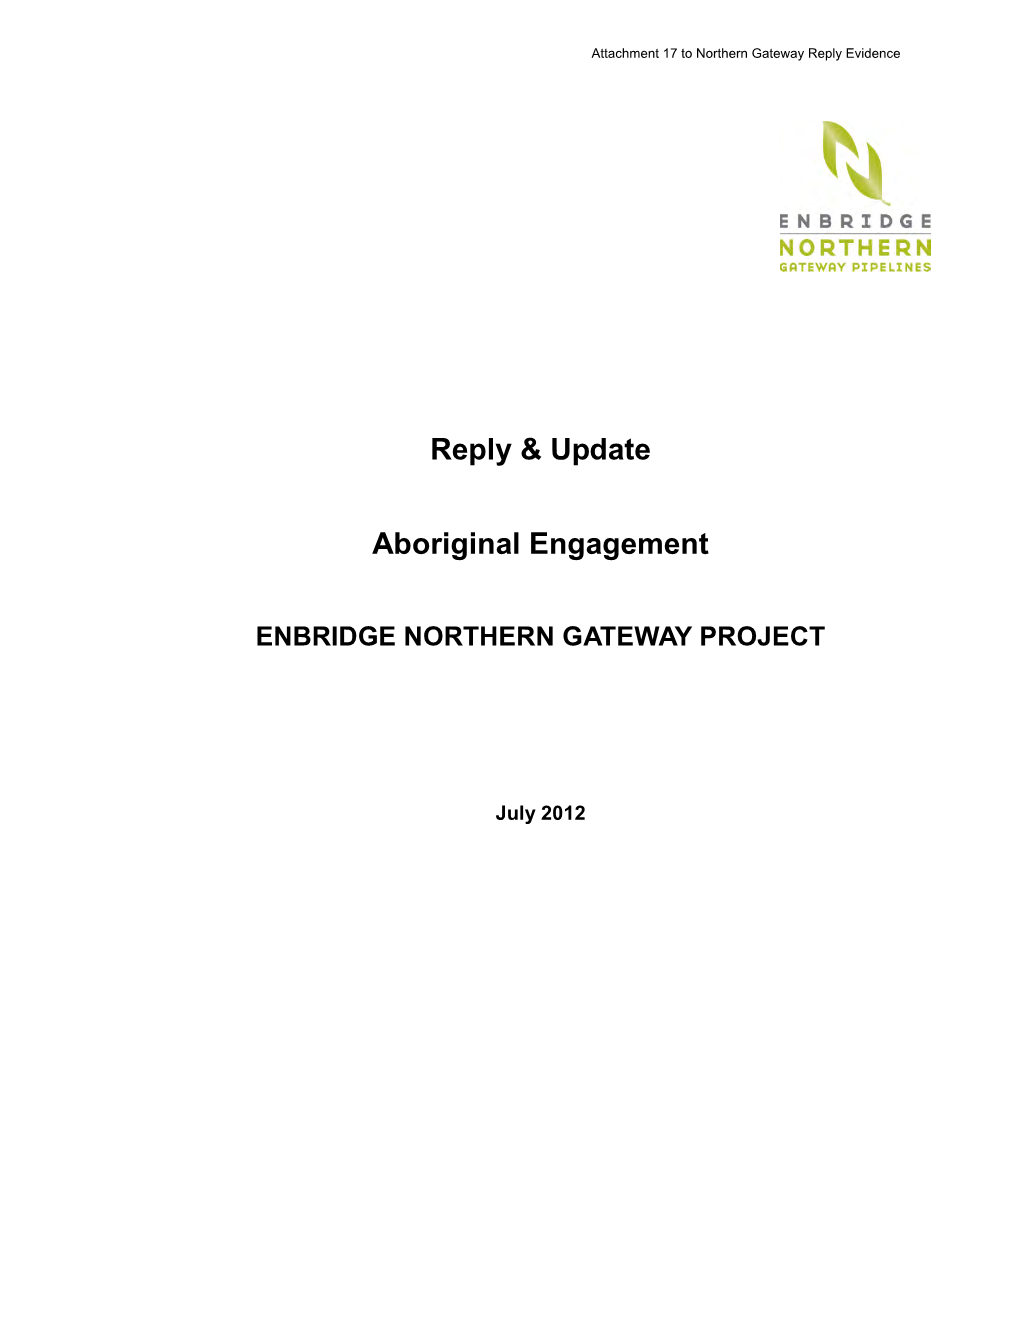 Aboriginal Engagement